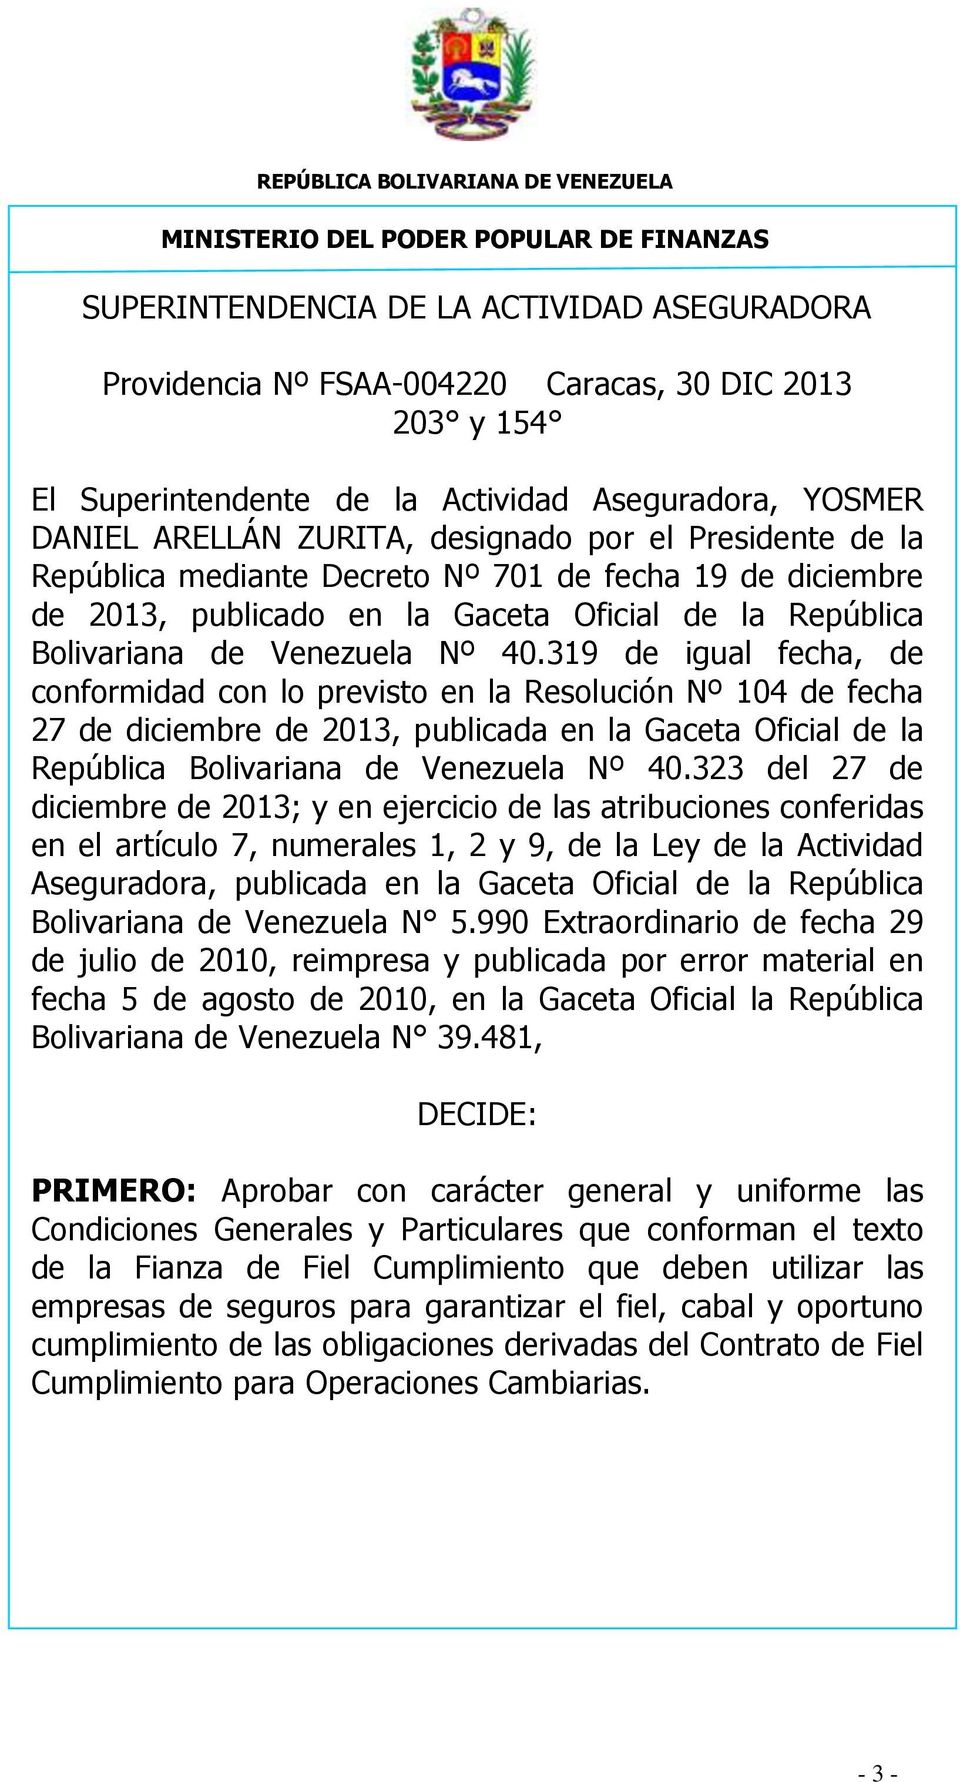 319 de igual fecha, de conformidad con lo previsto en la Resolución Nº 104 de fecha 27 de diciembre de 2013, publicada en la Gaceta Oficial de la República Bolivariana de Venezuela Nº 40.